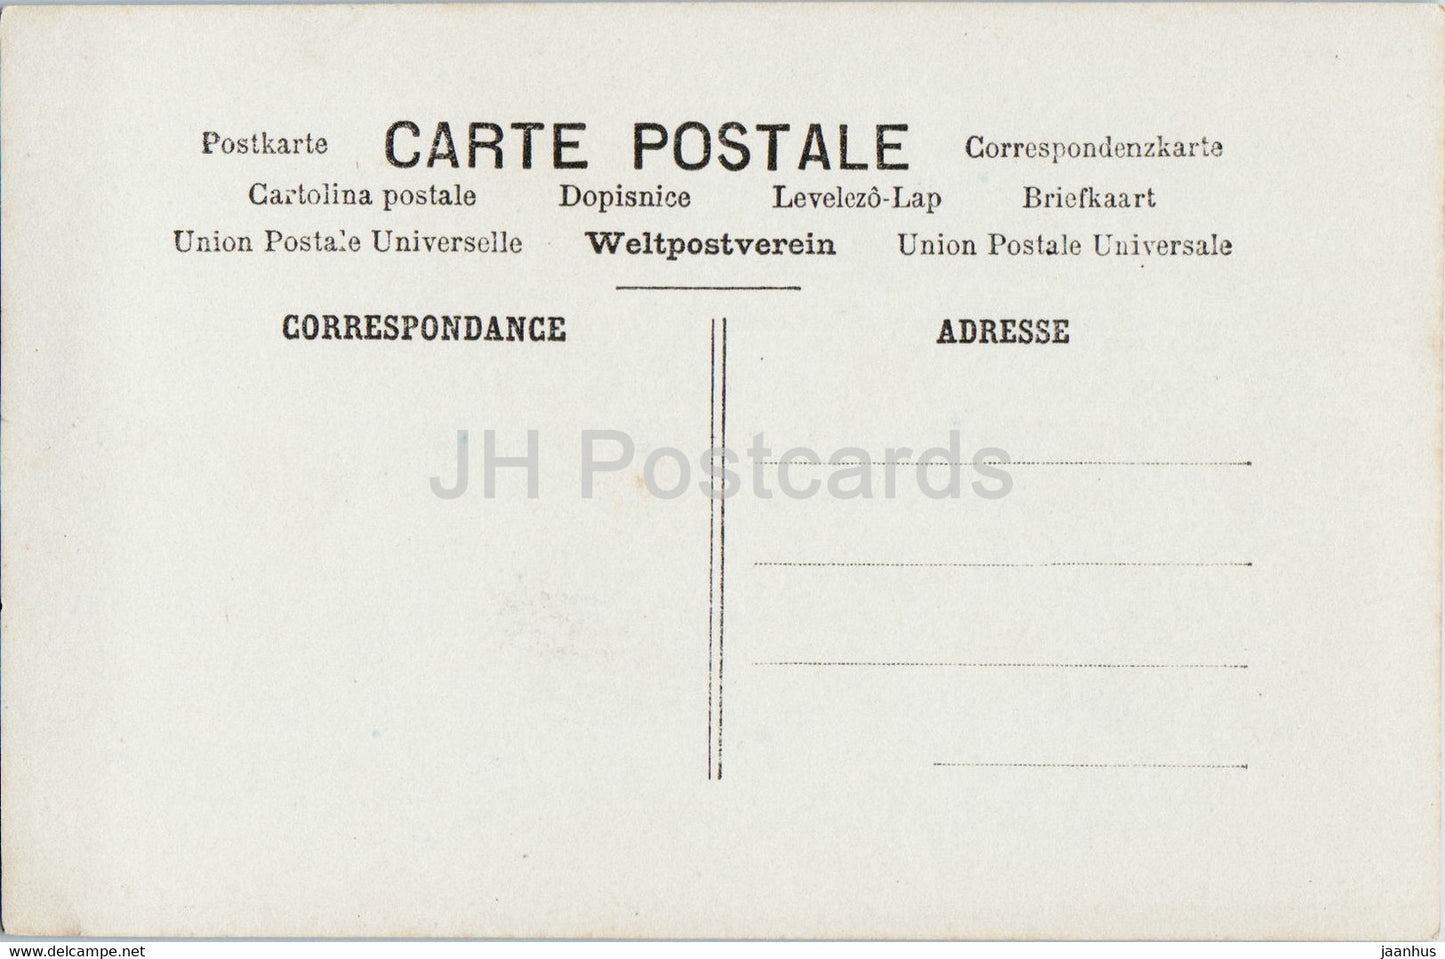 Ostergrußkarte – Heureuses Paques – Mädchen – Eier – 56 – ARS Paris – alte Postkarte – alte Postkarte – Frankreich – unbenutzt